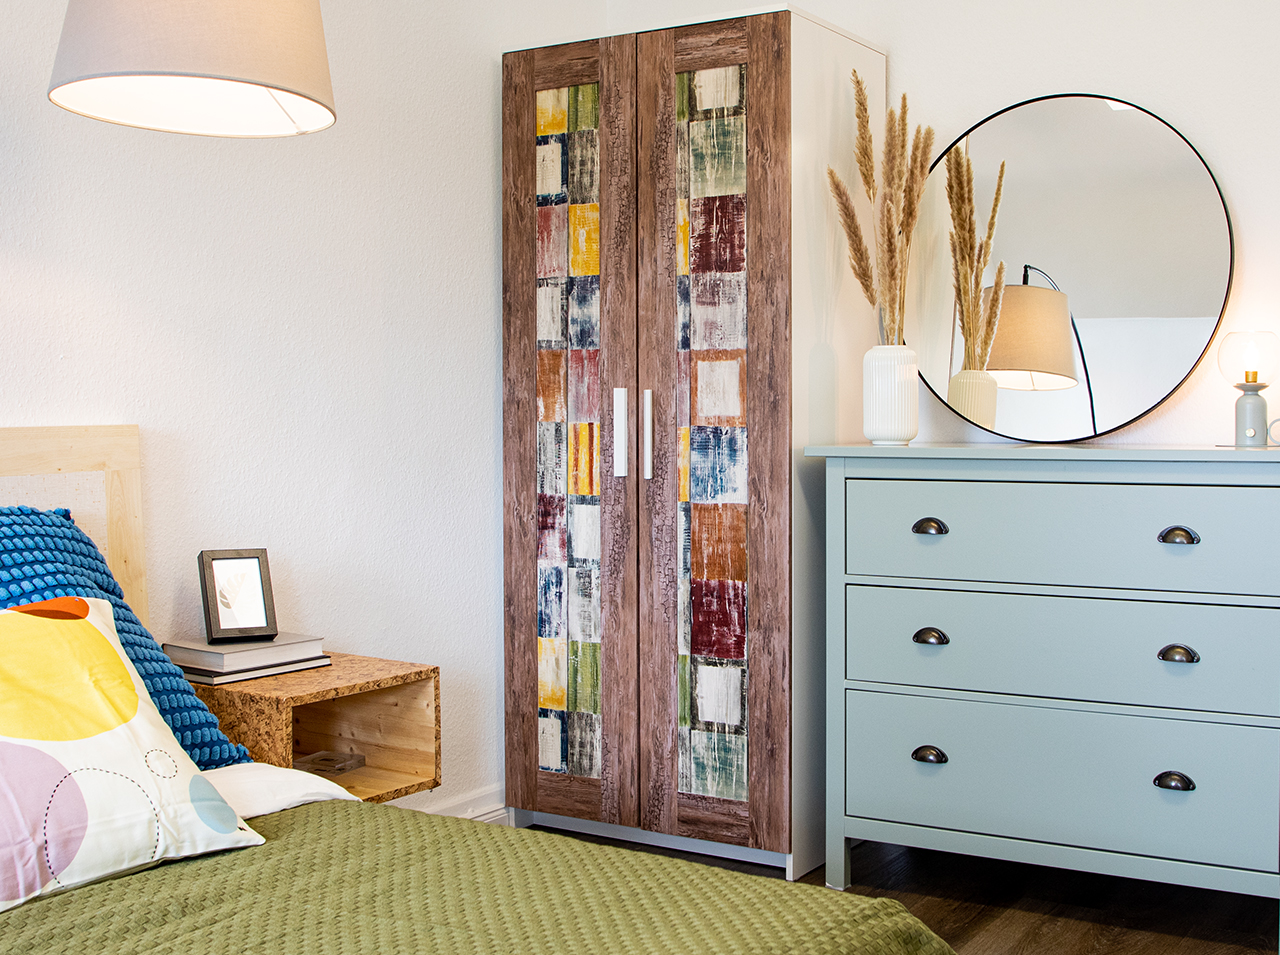 Drzwi szafy oklejone foliami samoprzylepnymi w kolorowym stylu vintage oraz o wyglądzie drewna przywodzą na myśl nadmorski domek.